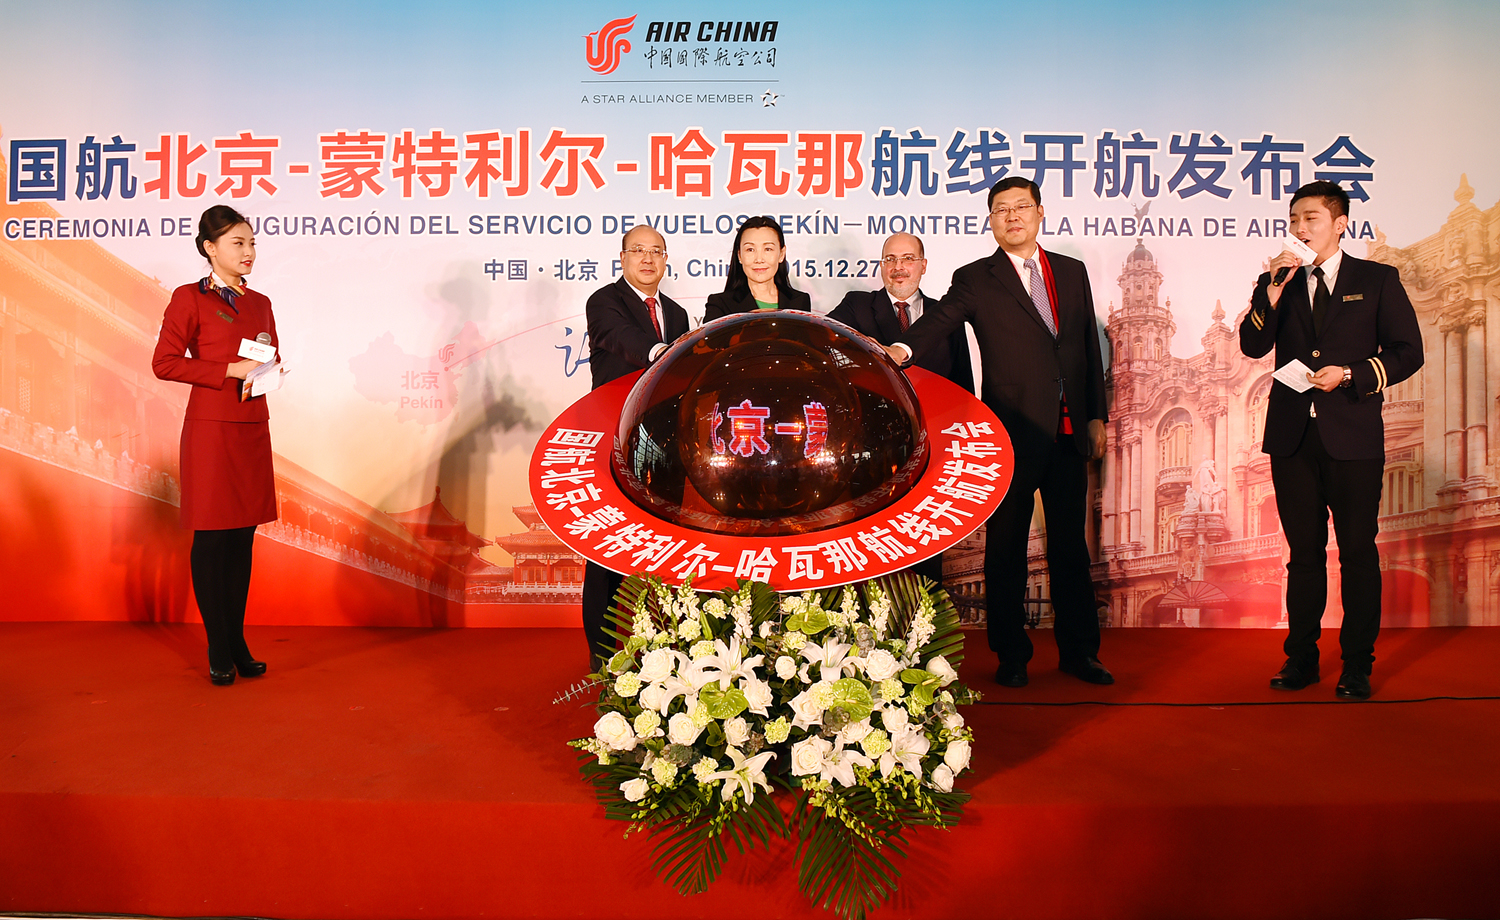 中国国航北京-蒙特利尔-哈瓦那航线开通 